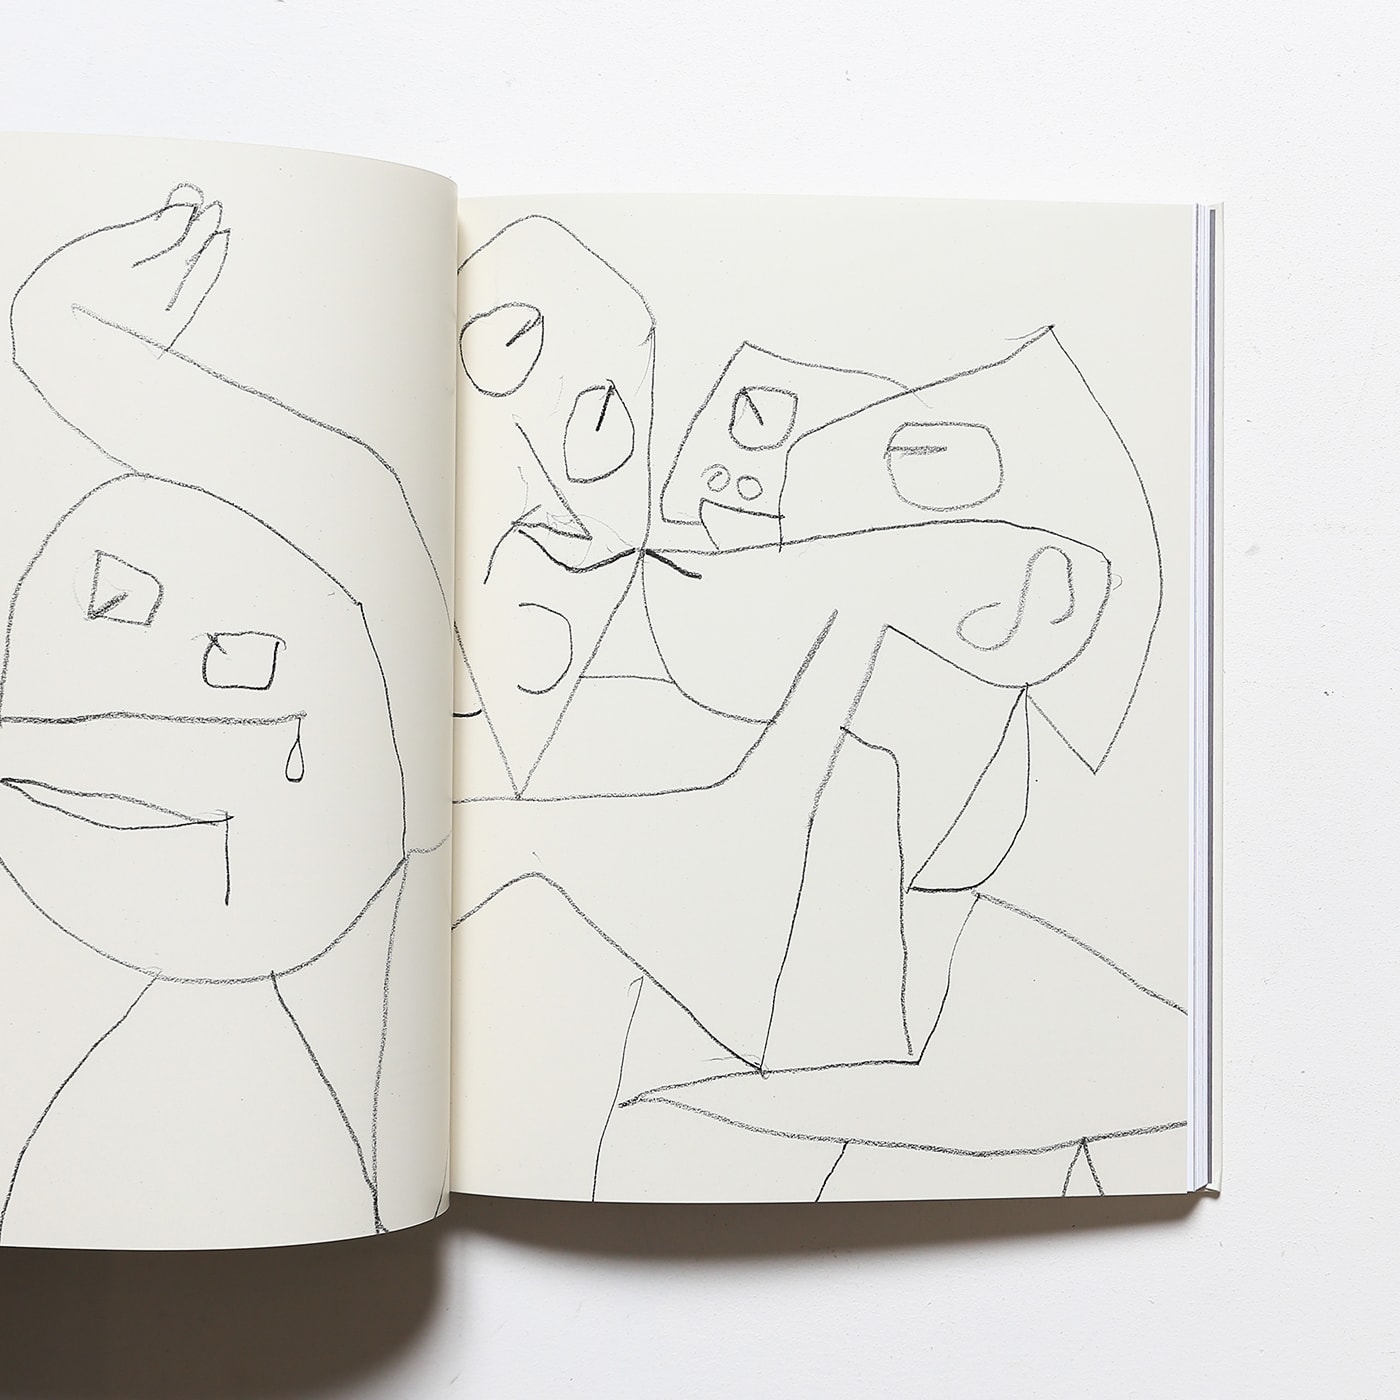 パウル・クレー、Paul Klee、【「E」】、希少な画集画、状態良好